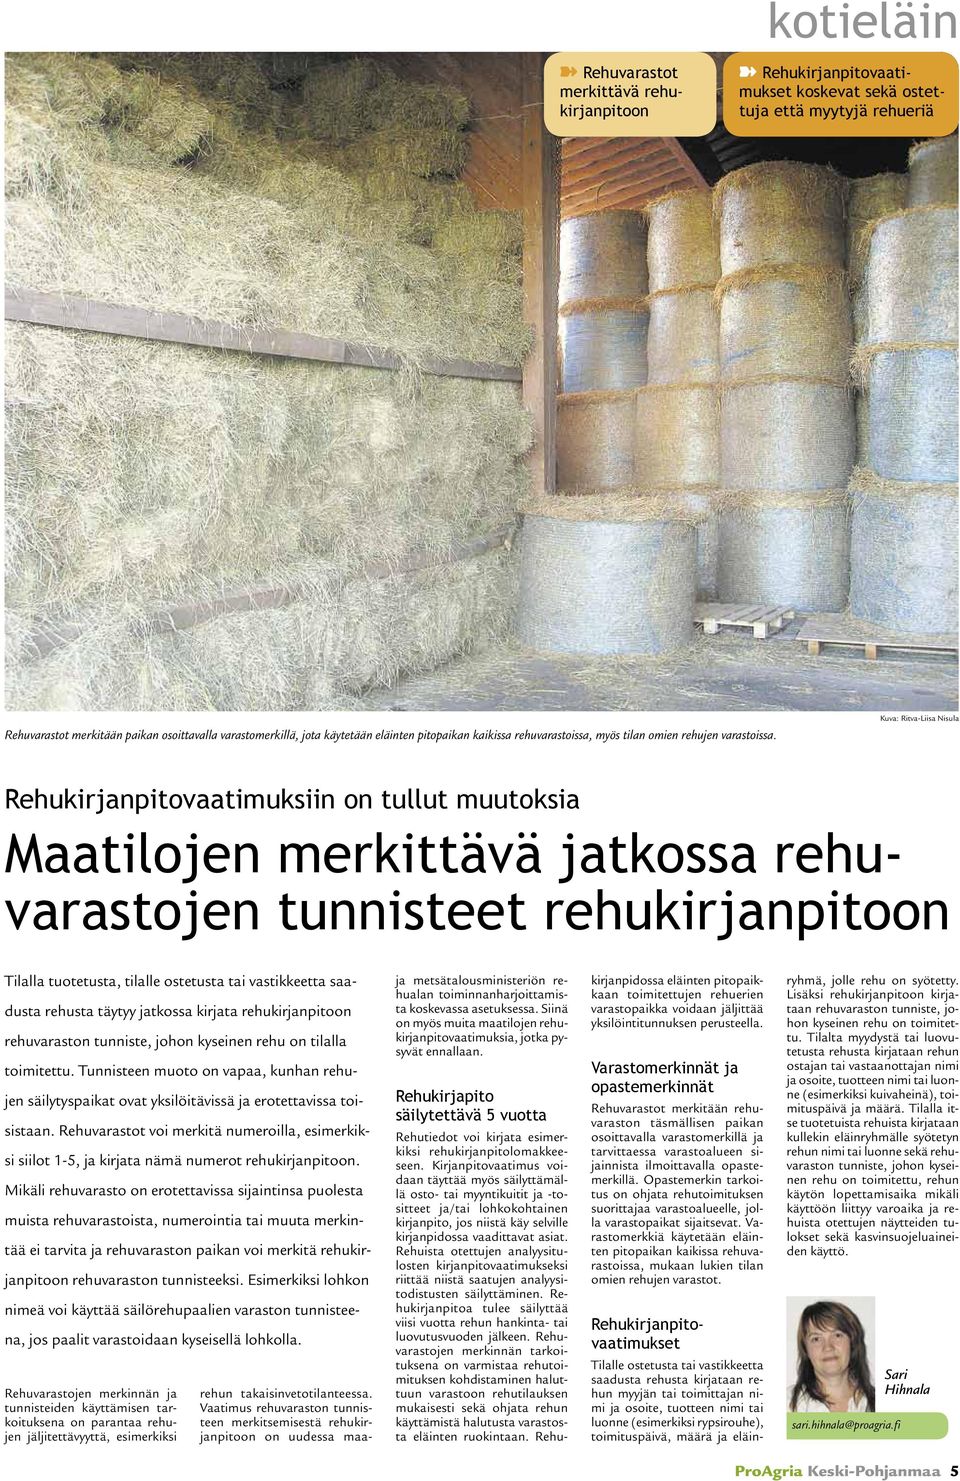 Kuva: Ritva-Liisa Nisula Rehukirjanpitovaatimuksiin on tullut muutoksia Maatilojen merkittävä jatkossa rehuvarastojen tunnisteet rehukirjanpitoon Tilalla tuotetusta, tilalle ostetusta tai